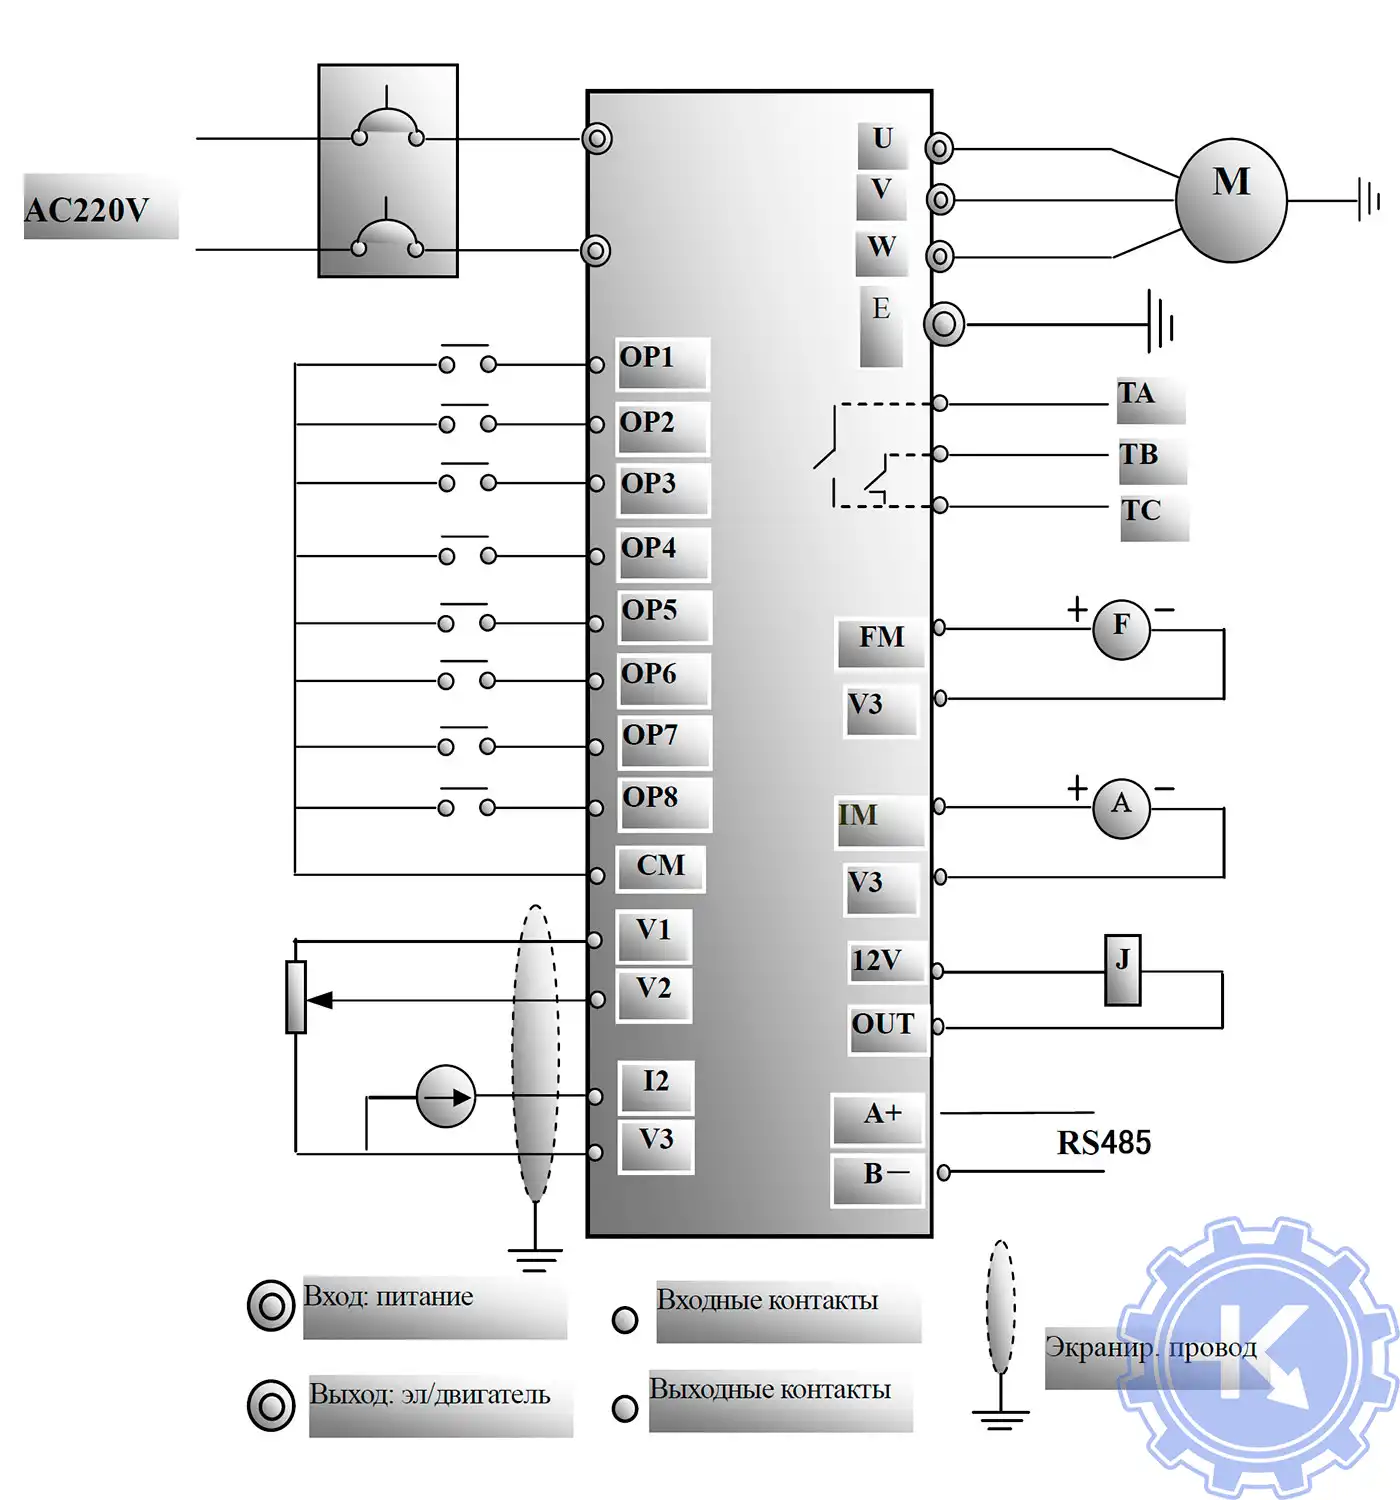 Стандартная блок-схема подключения преобразователей частоты EuraDrives F1000-G 220V